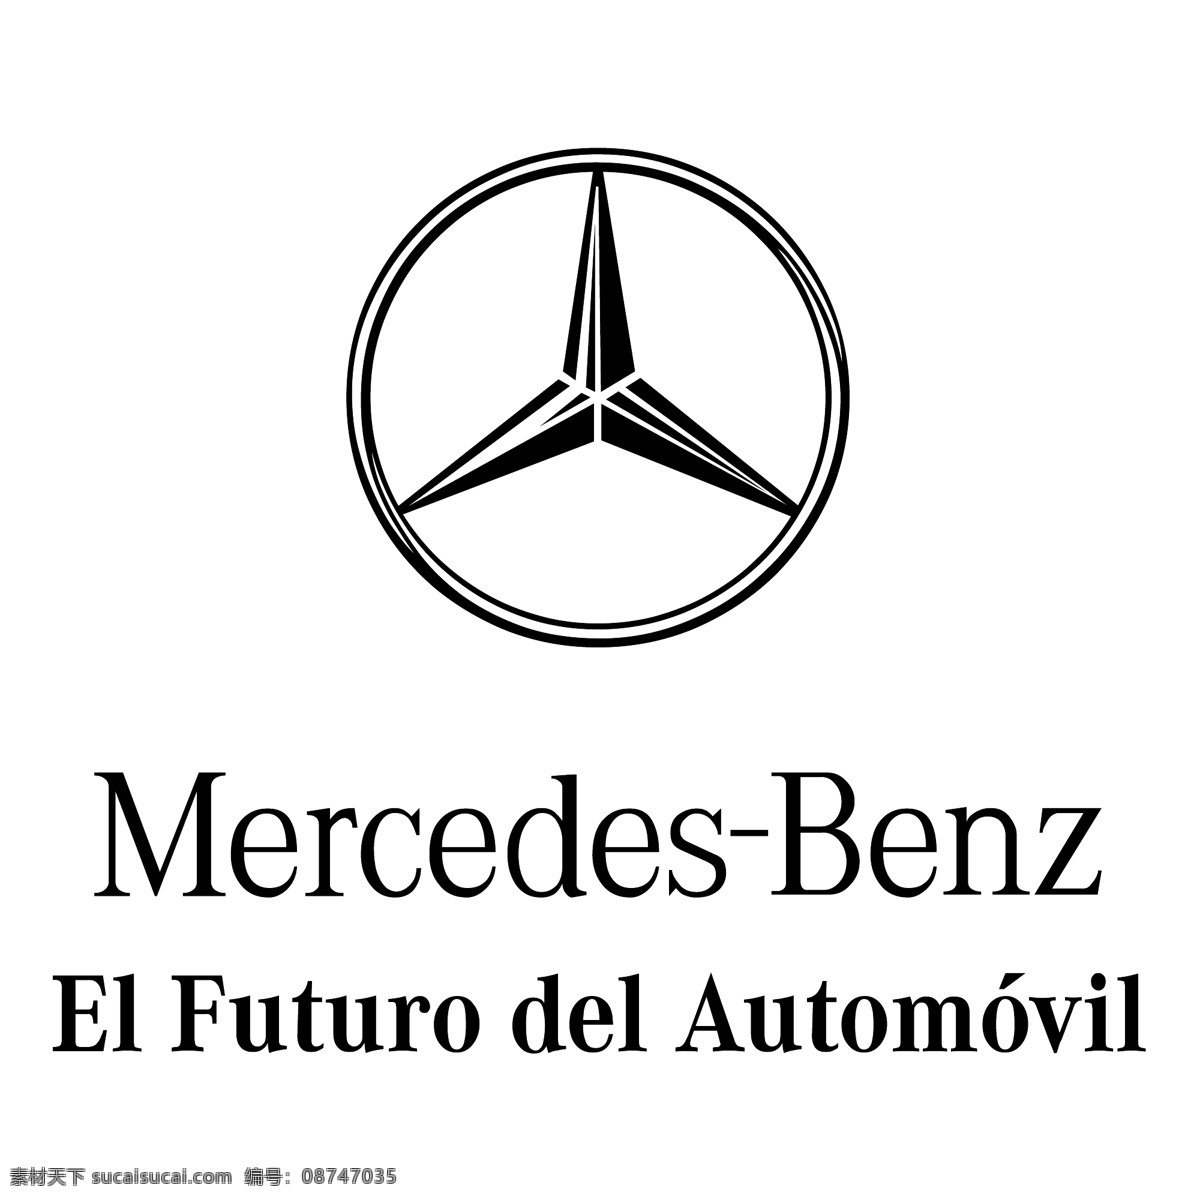 梅 赛 德斯 奔驰 下午 futuro 删除 辆 轿车 免费 标志 psd源文件 logo设计